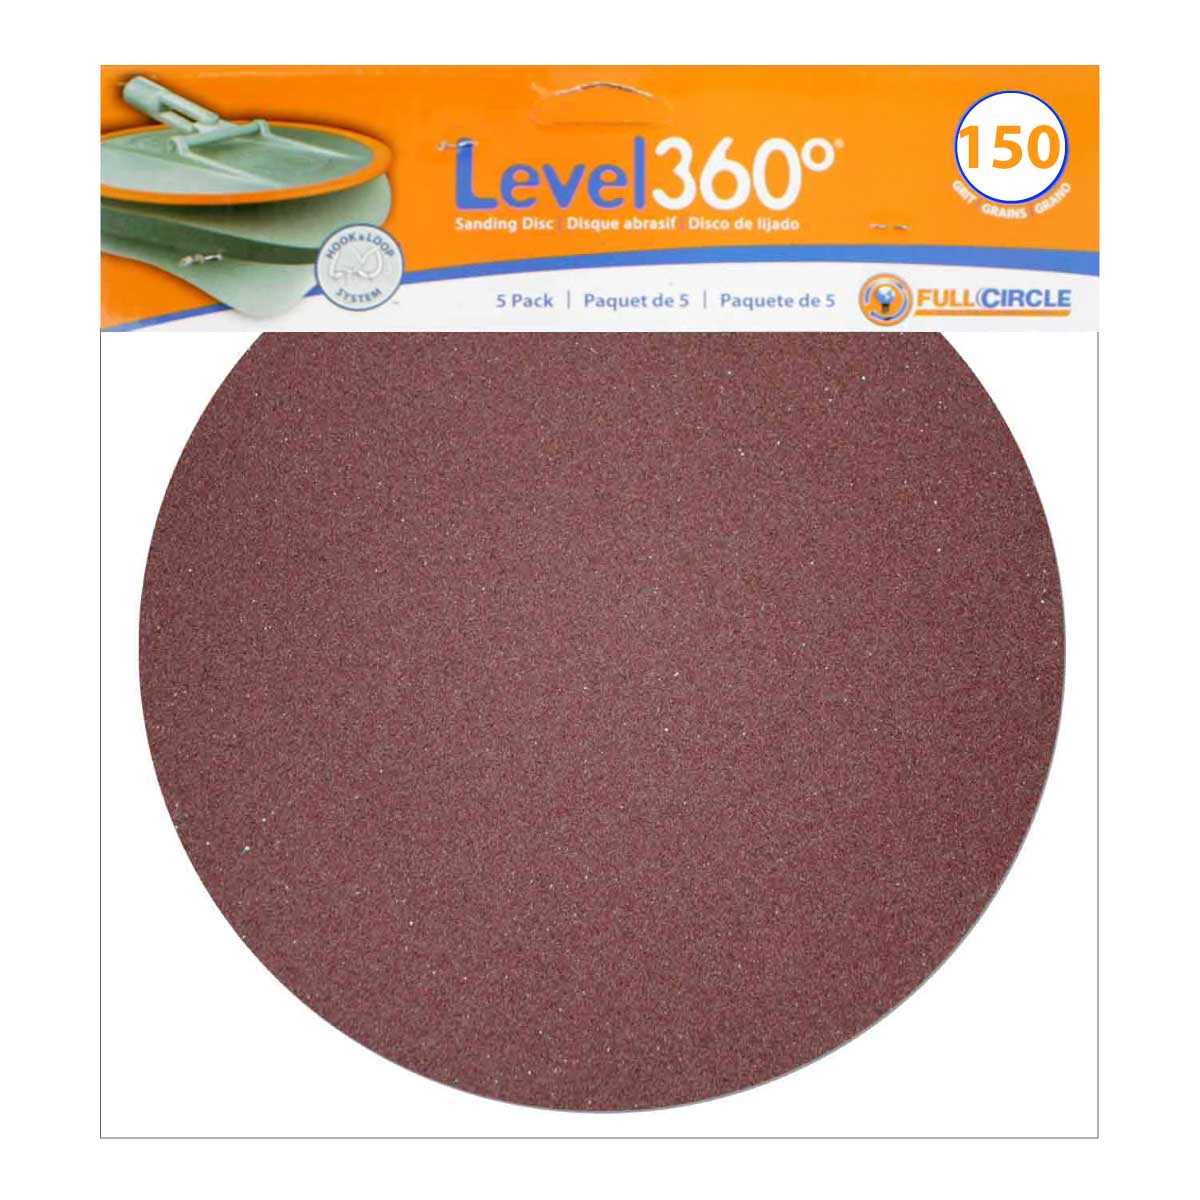 Level 360 Sanding Discs 150